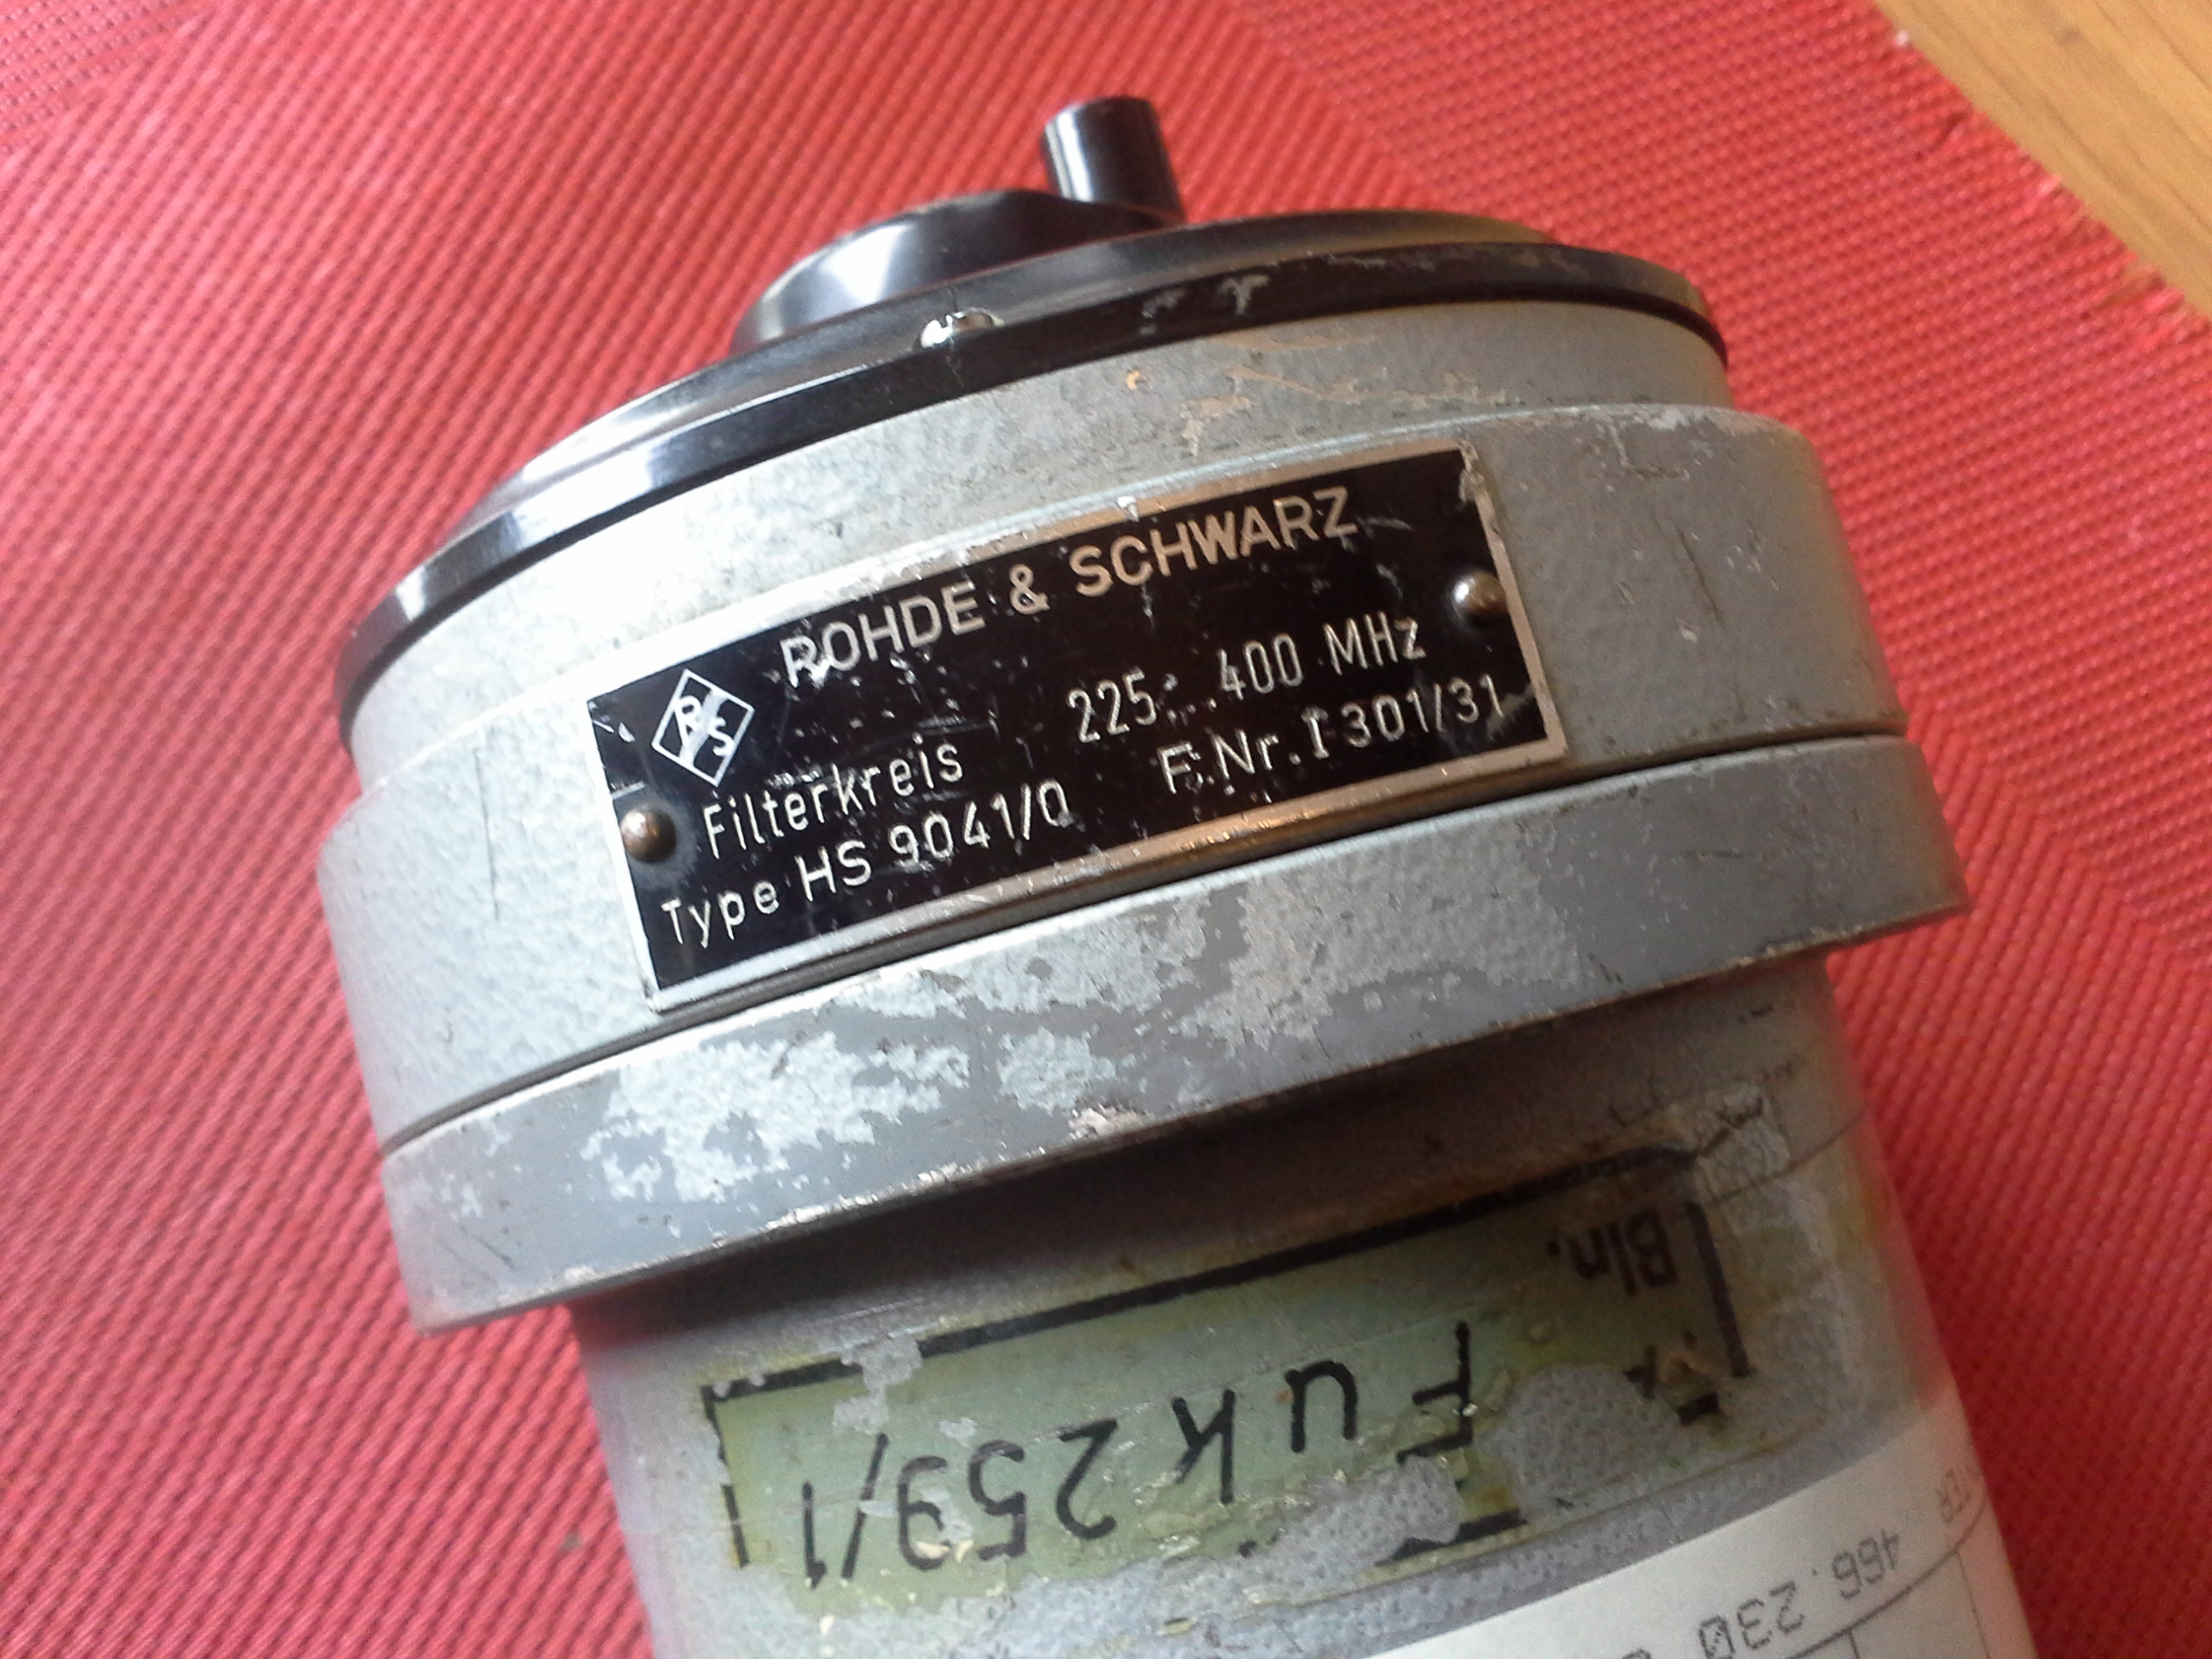 Rohde & Schwarz, Bandbassfilter, Filterkreis, 225....400 MHz, Typ HS 9041/0